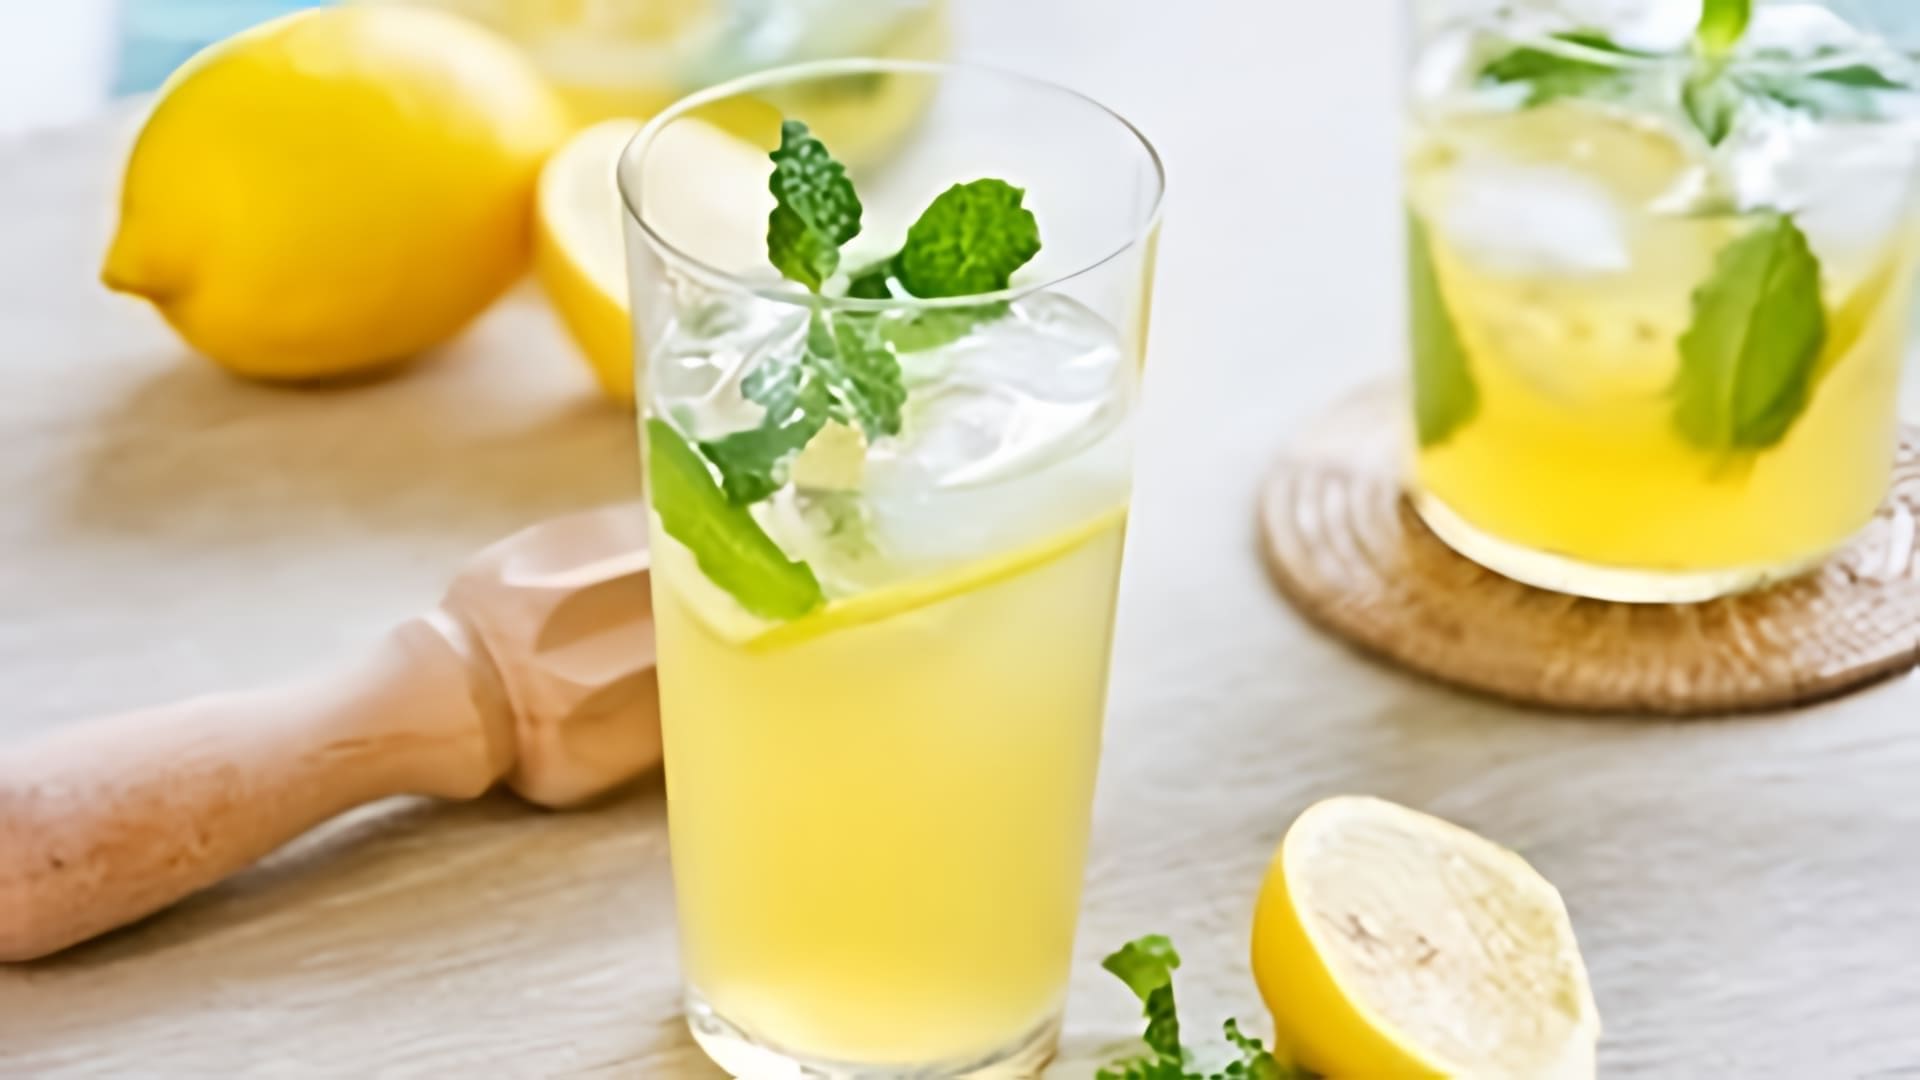 В этом видео демонстрируется процесс приготовления домашнего лимонада